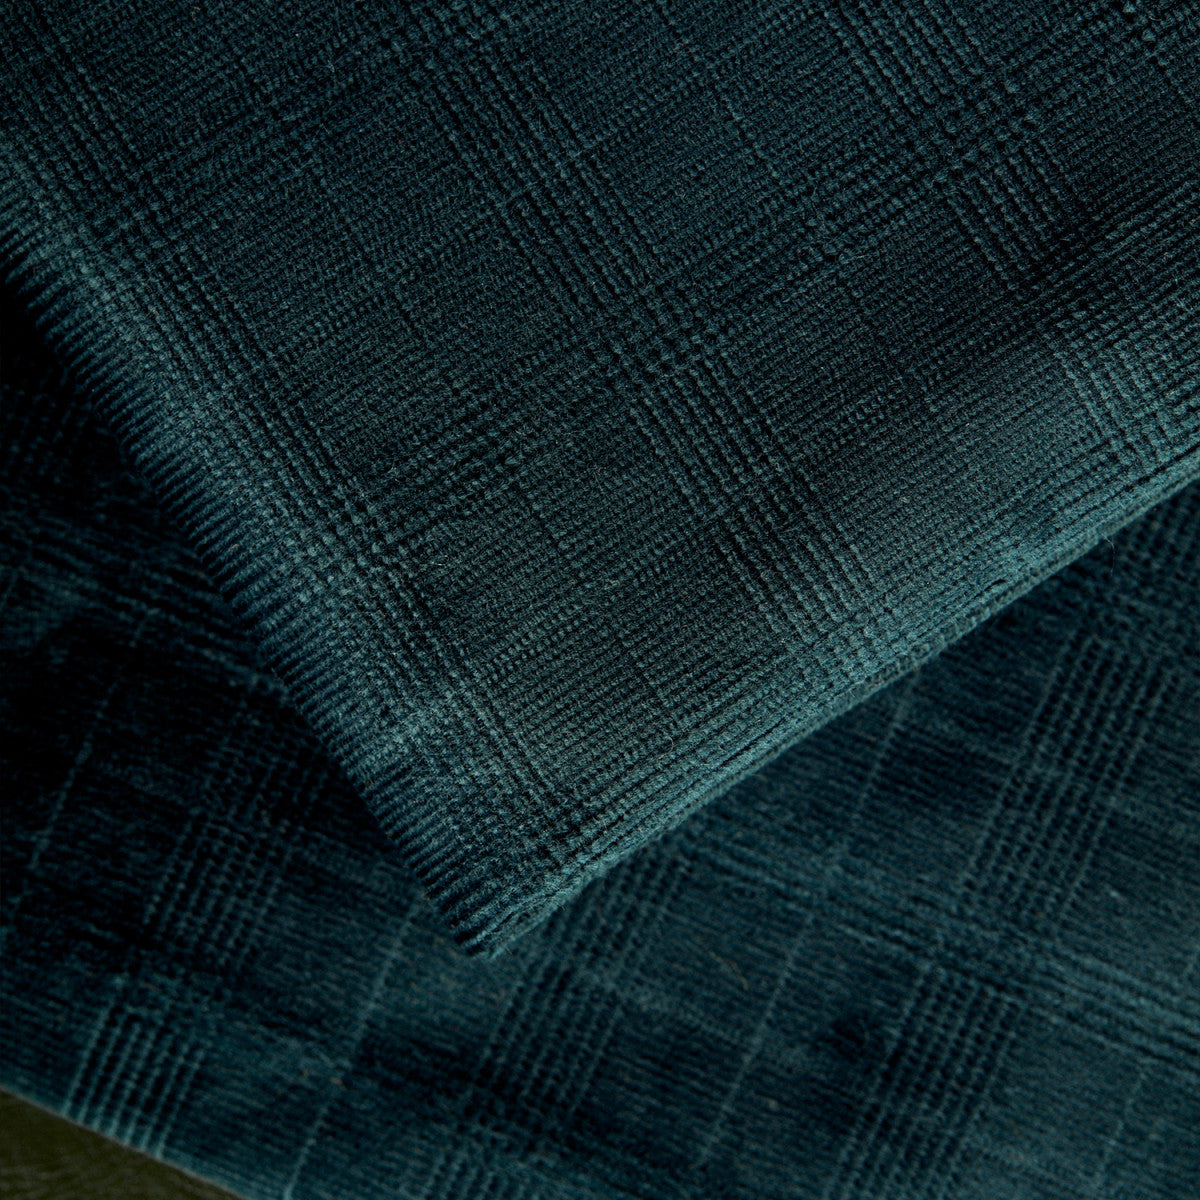 Atelier Brunette - Dandy Forest Velvet Fabric